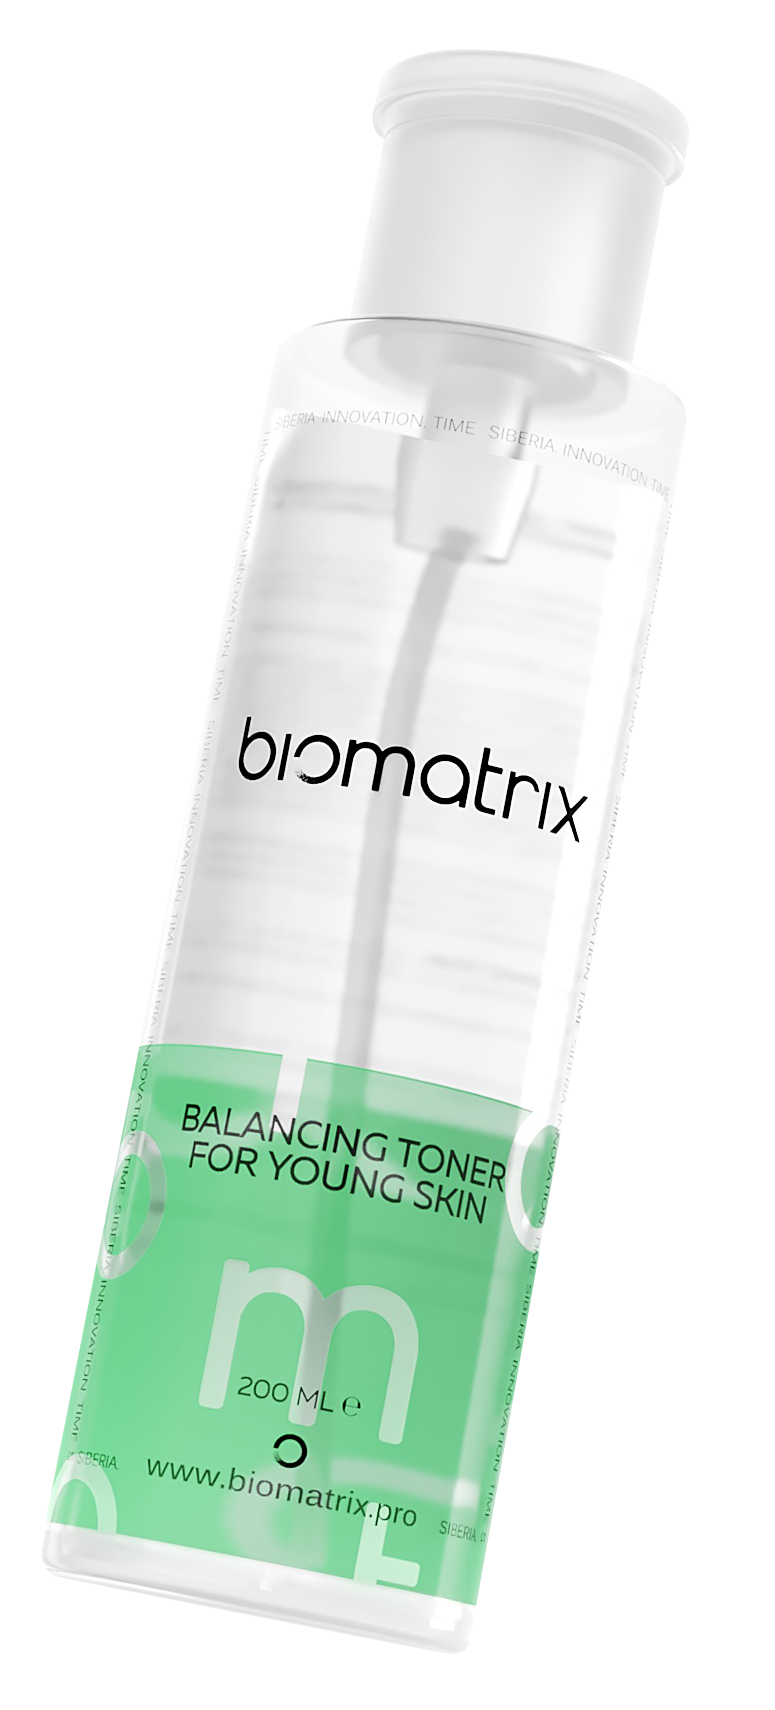 Купить Балансирующий тоник Biomatrix Balancing Toner For Young Skin для молодой кожи, 200 мл, Лосьон, тоник для лица